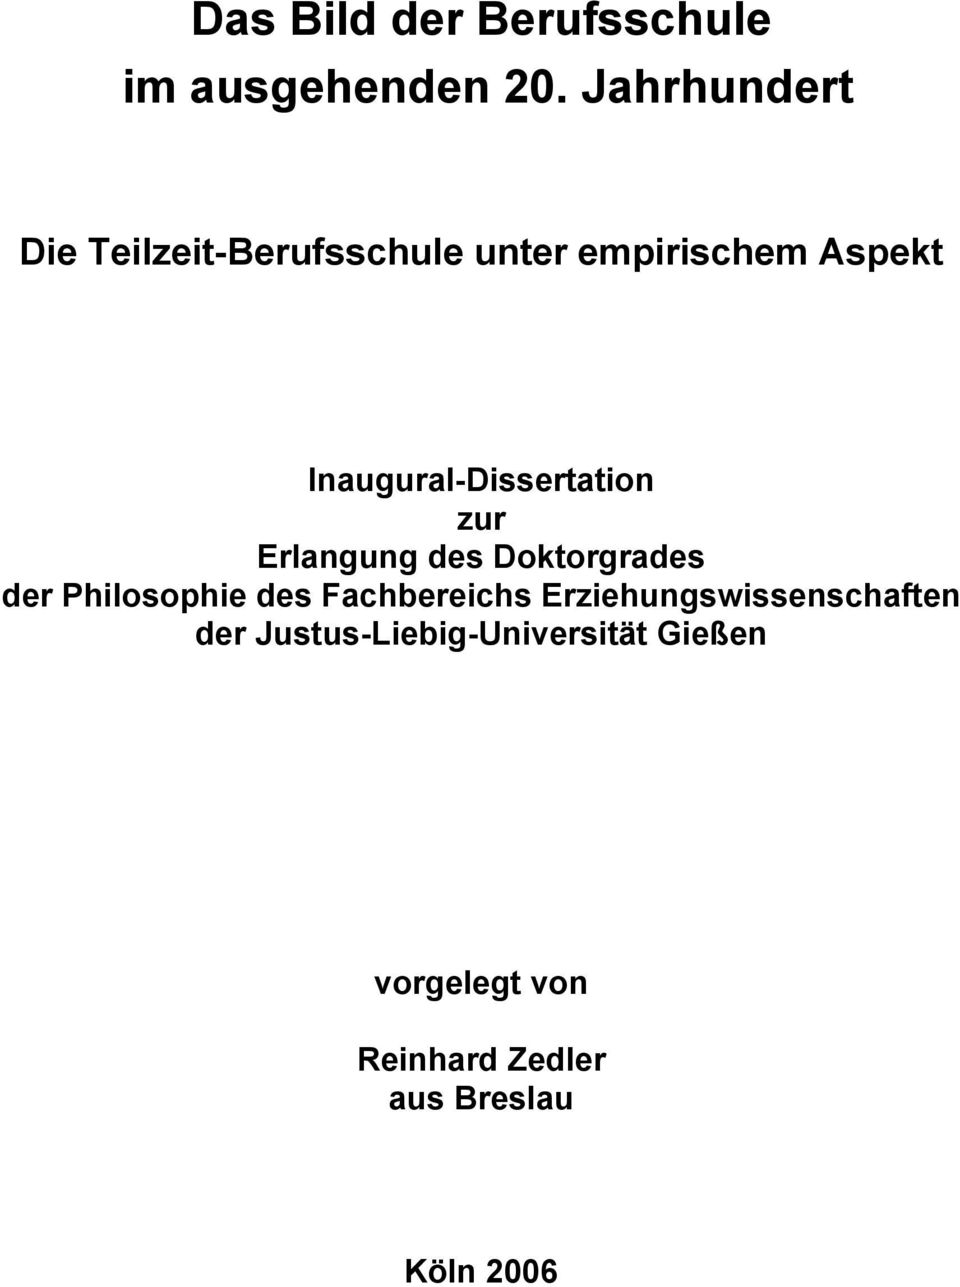 Inaugural-Dissertation zur Erlangung des Doktorgrades der Philosophie des